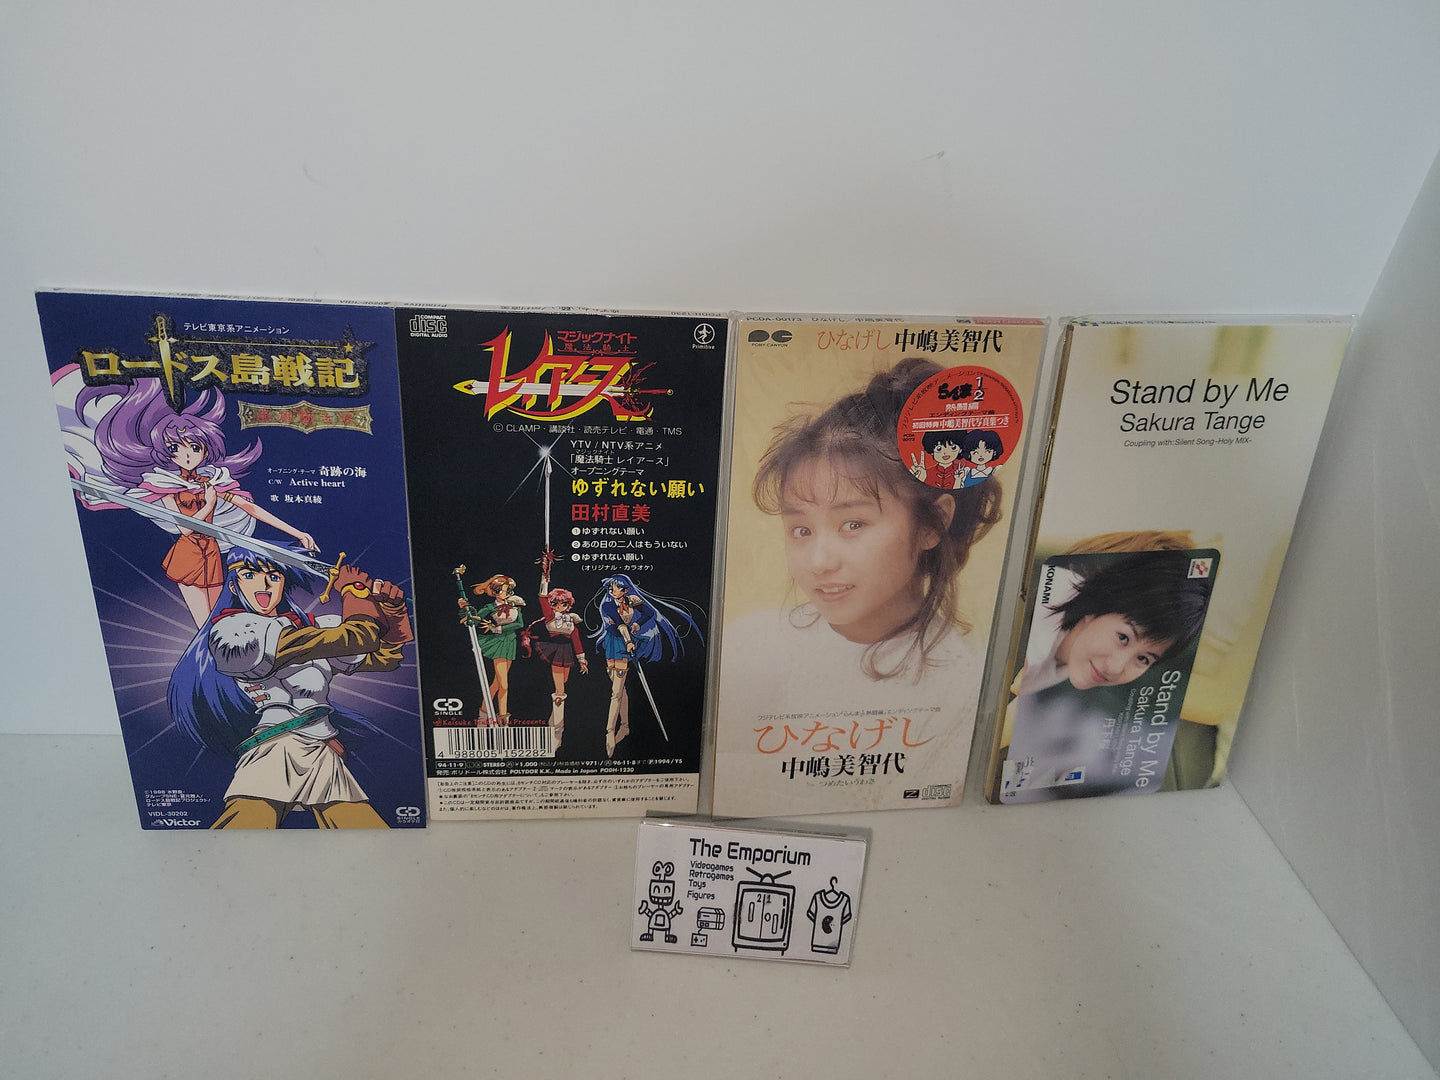 4 anime mini cd set  - Music cd soundtrack